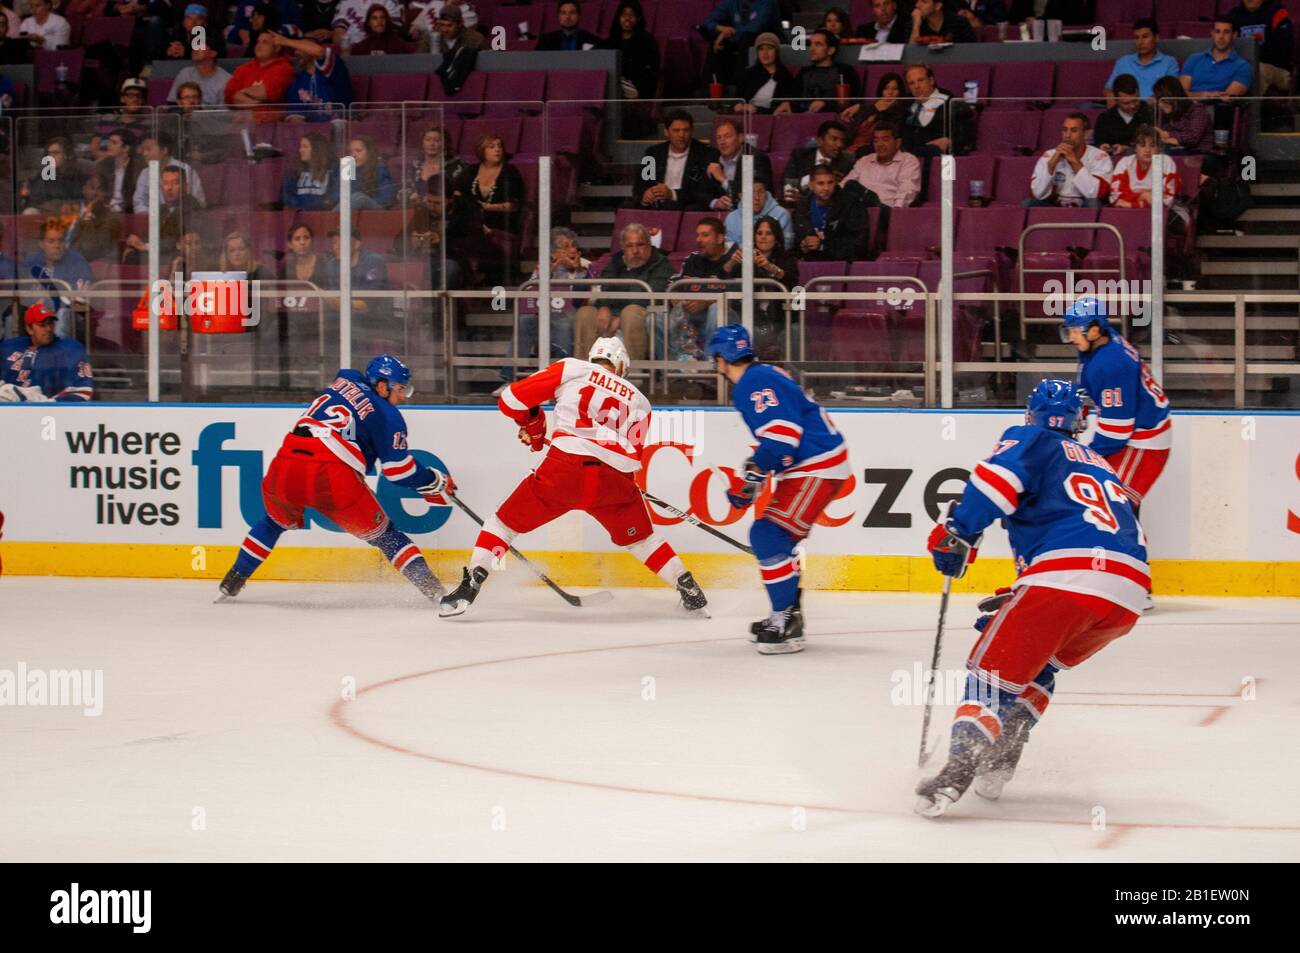 Ligue de hockey sur glace NHL match Rangers au MSG. Lorsque vous parlez des grandes salles de sport, Madison Square Garden devrait être près du haut de la liste. H Banque D'Images